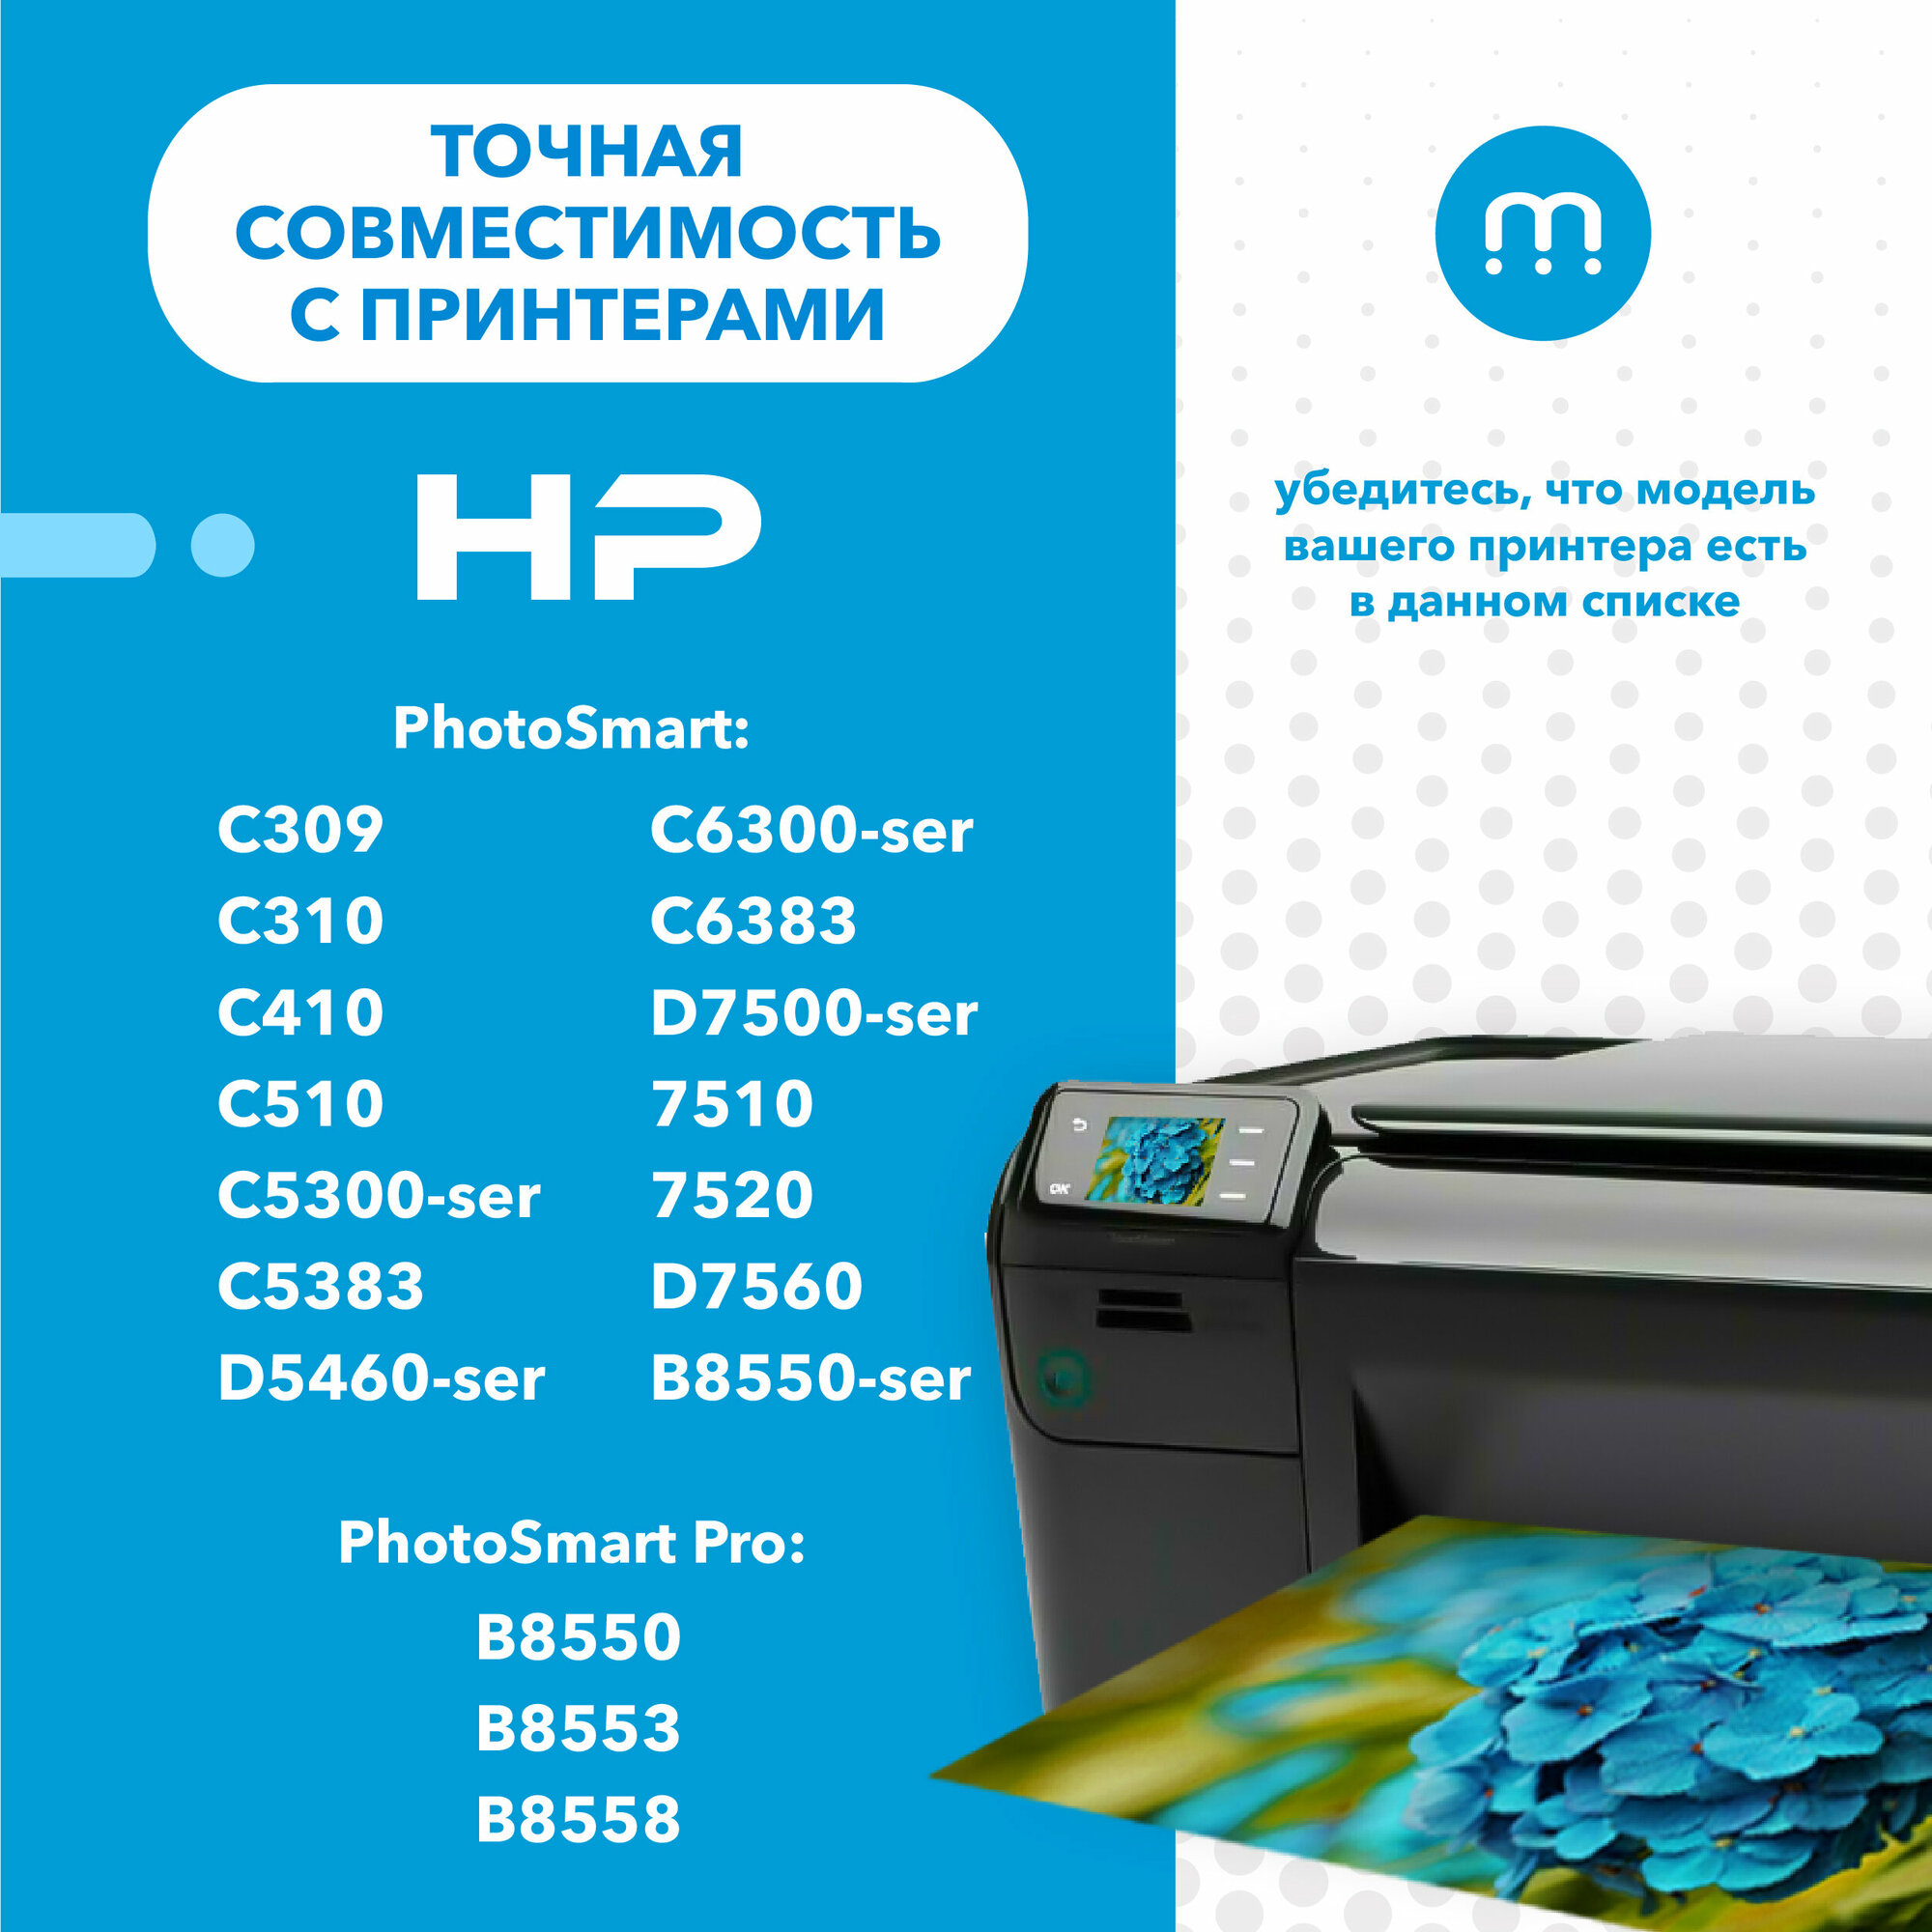 Комплект картриджей Inkmaster HP 178 XL для струйных принтеров (с чипом) PhotoSmart C310, C5383, 7510, C5300, D5460, D7500, B8550 и тд, многоцветный